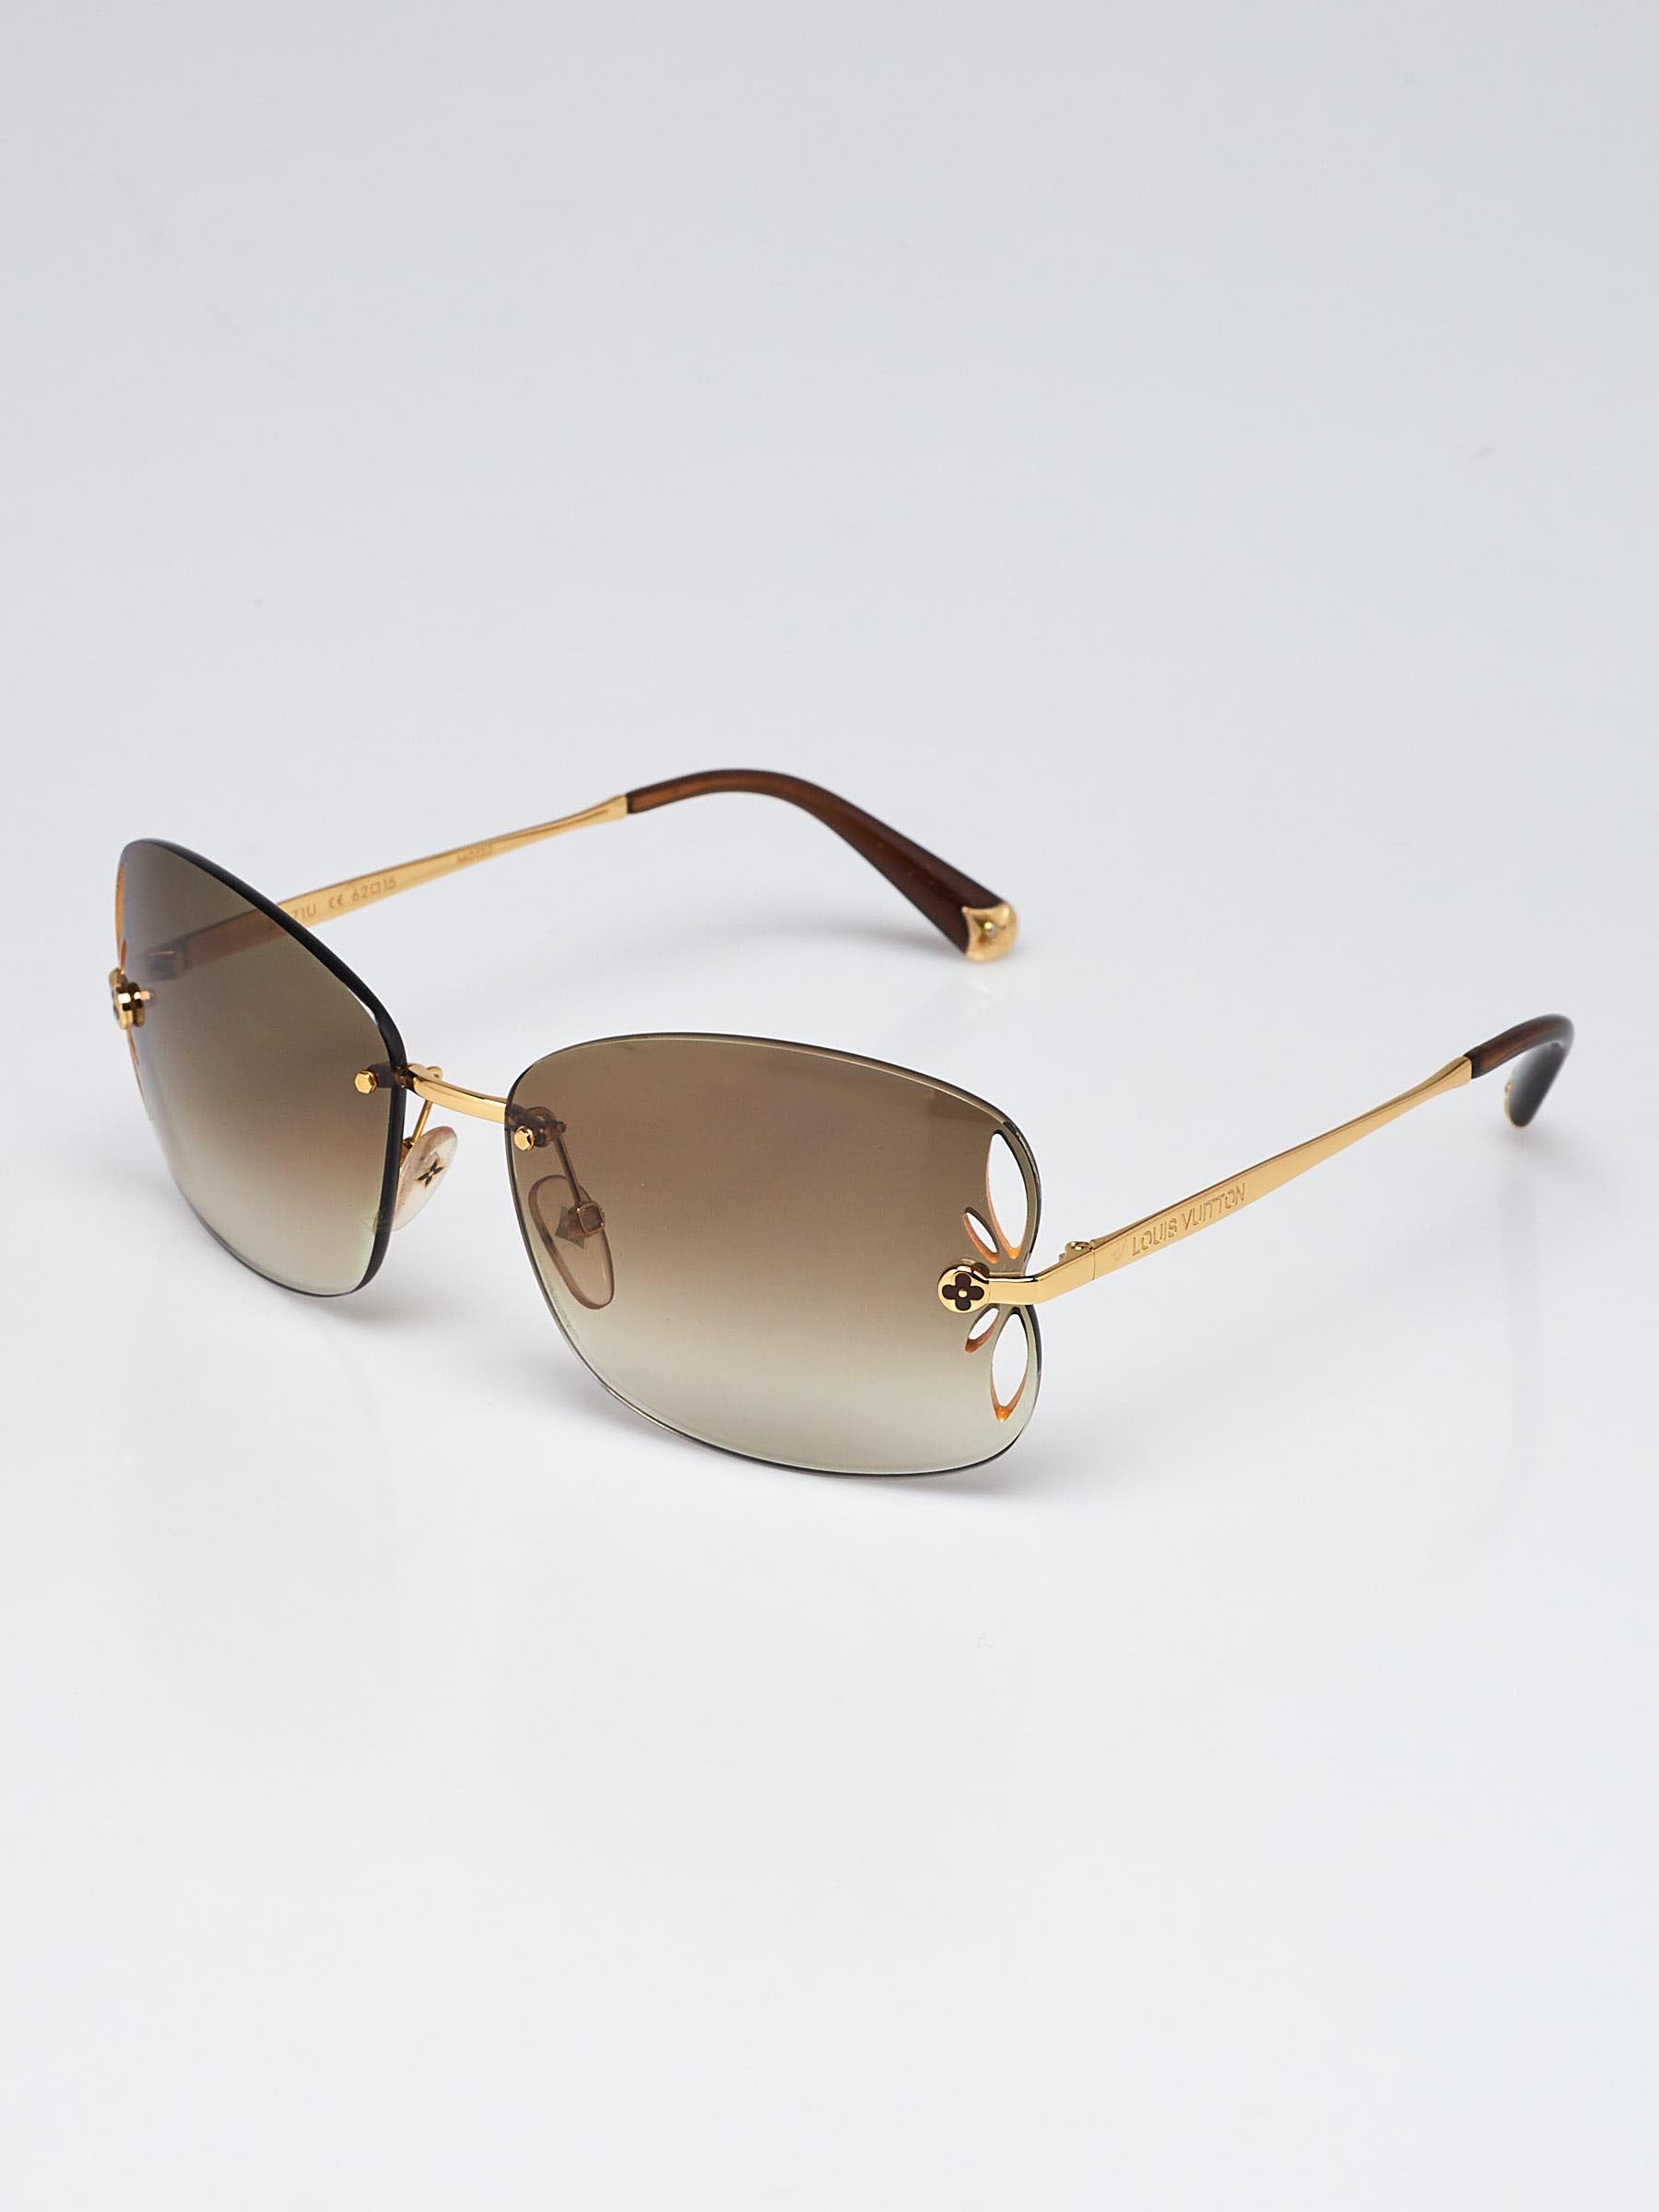 Louis Vuitton, Accessories, Authentic Louis Vuitton Box Lv Sunglasses